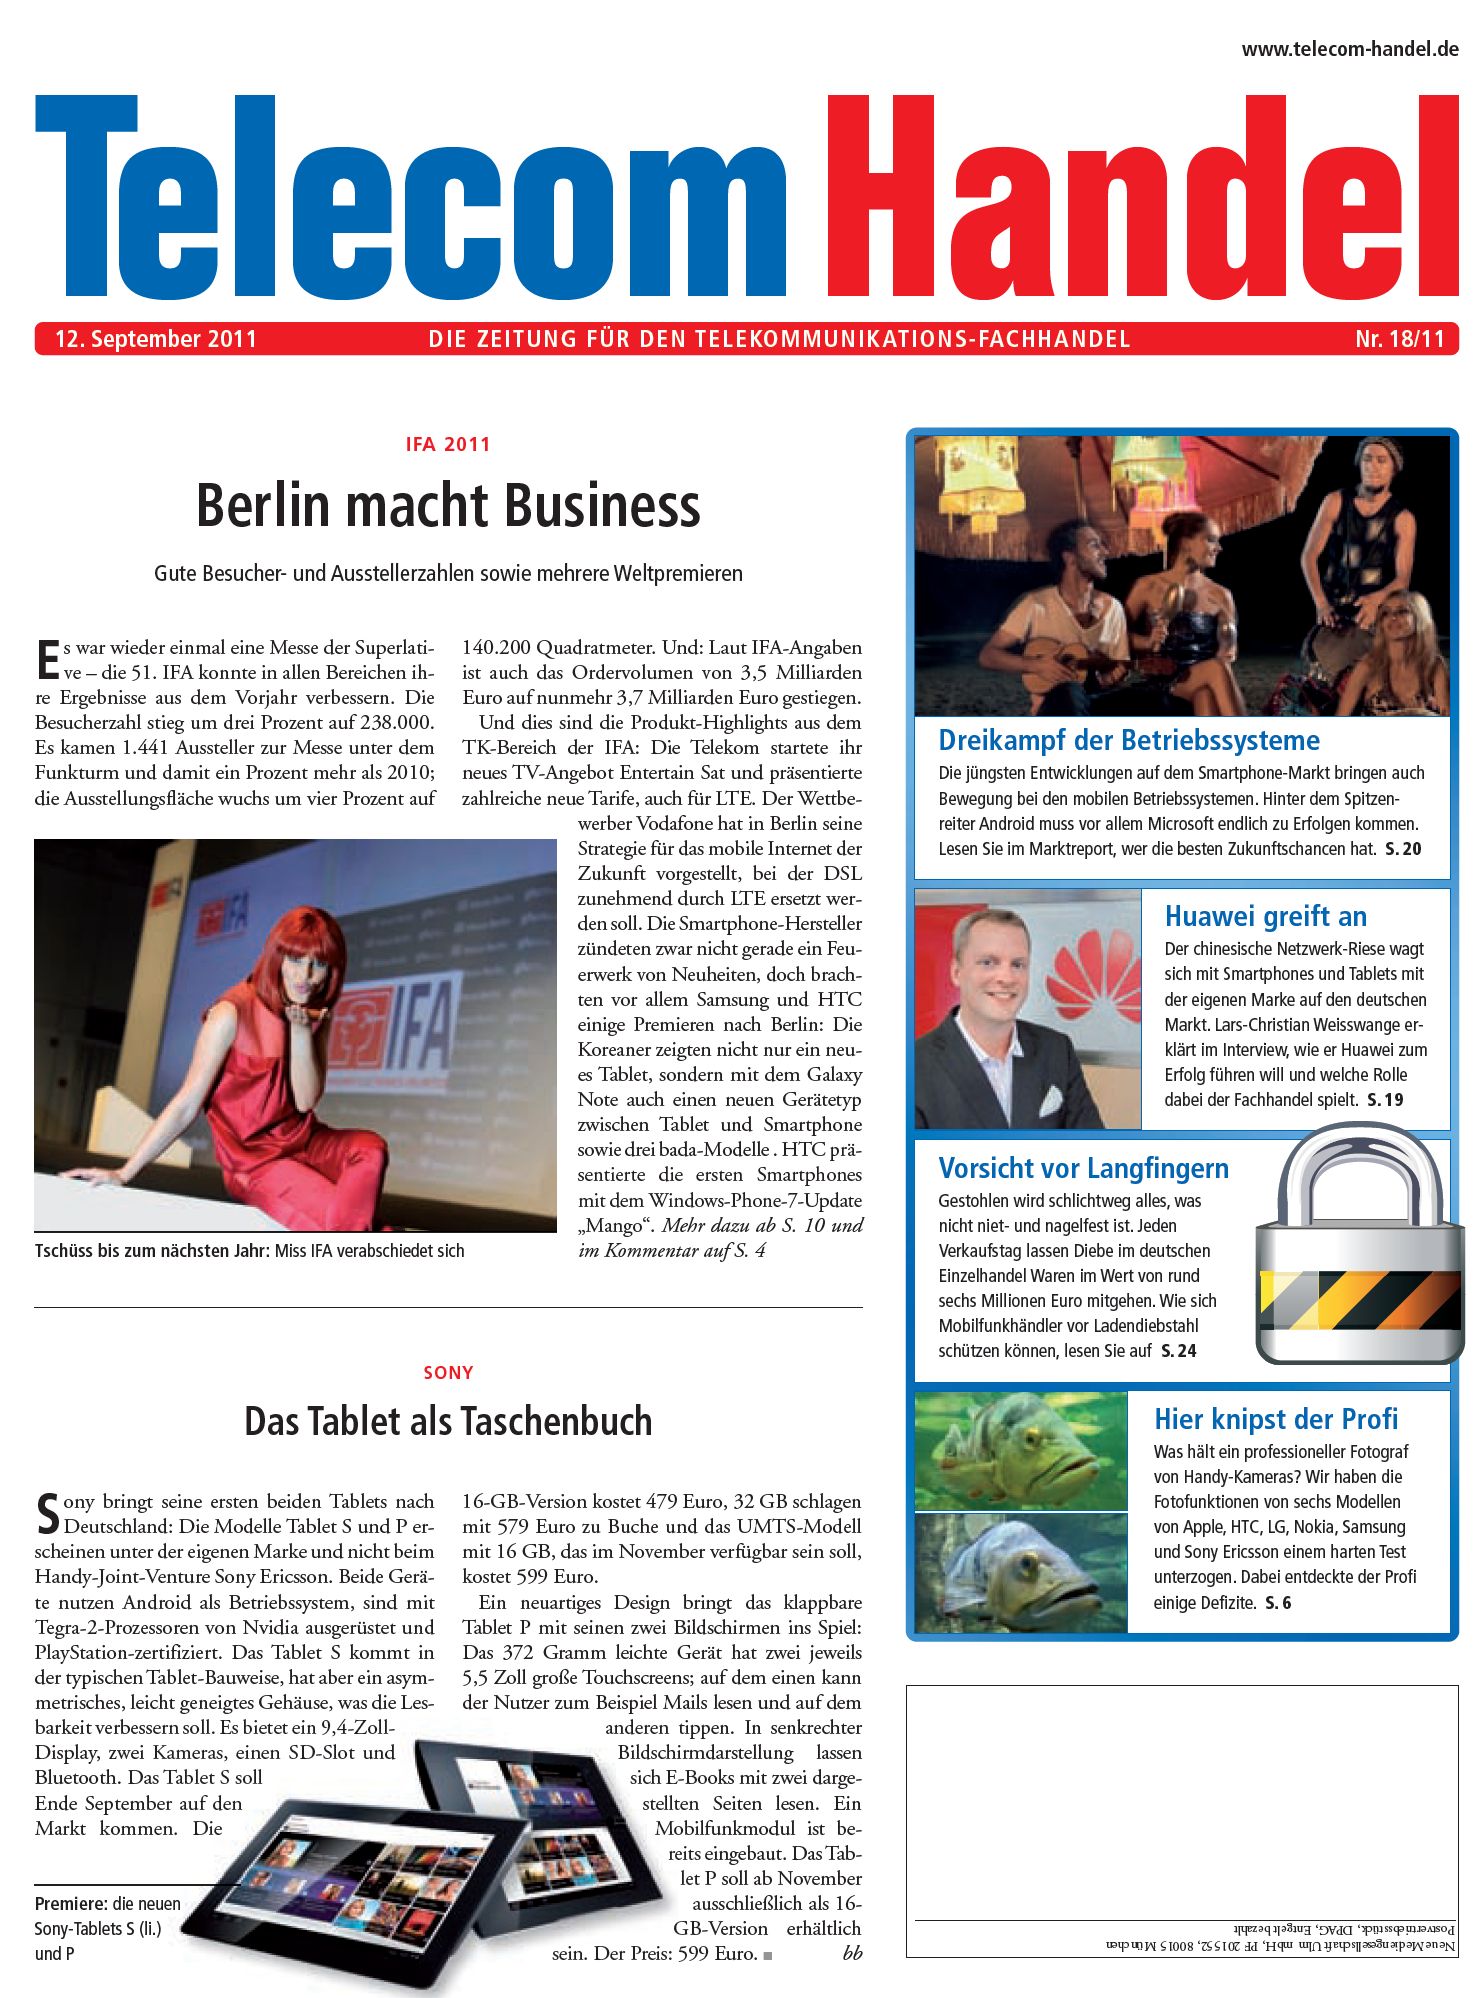 Telecom Handel Ausgabe 18/2011